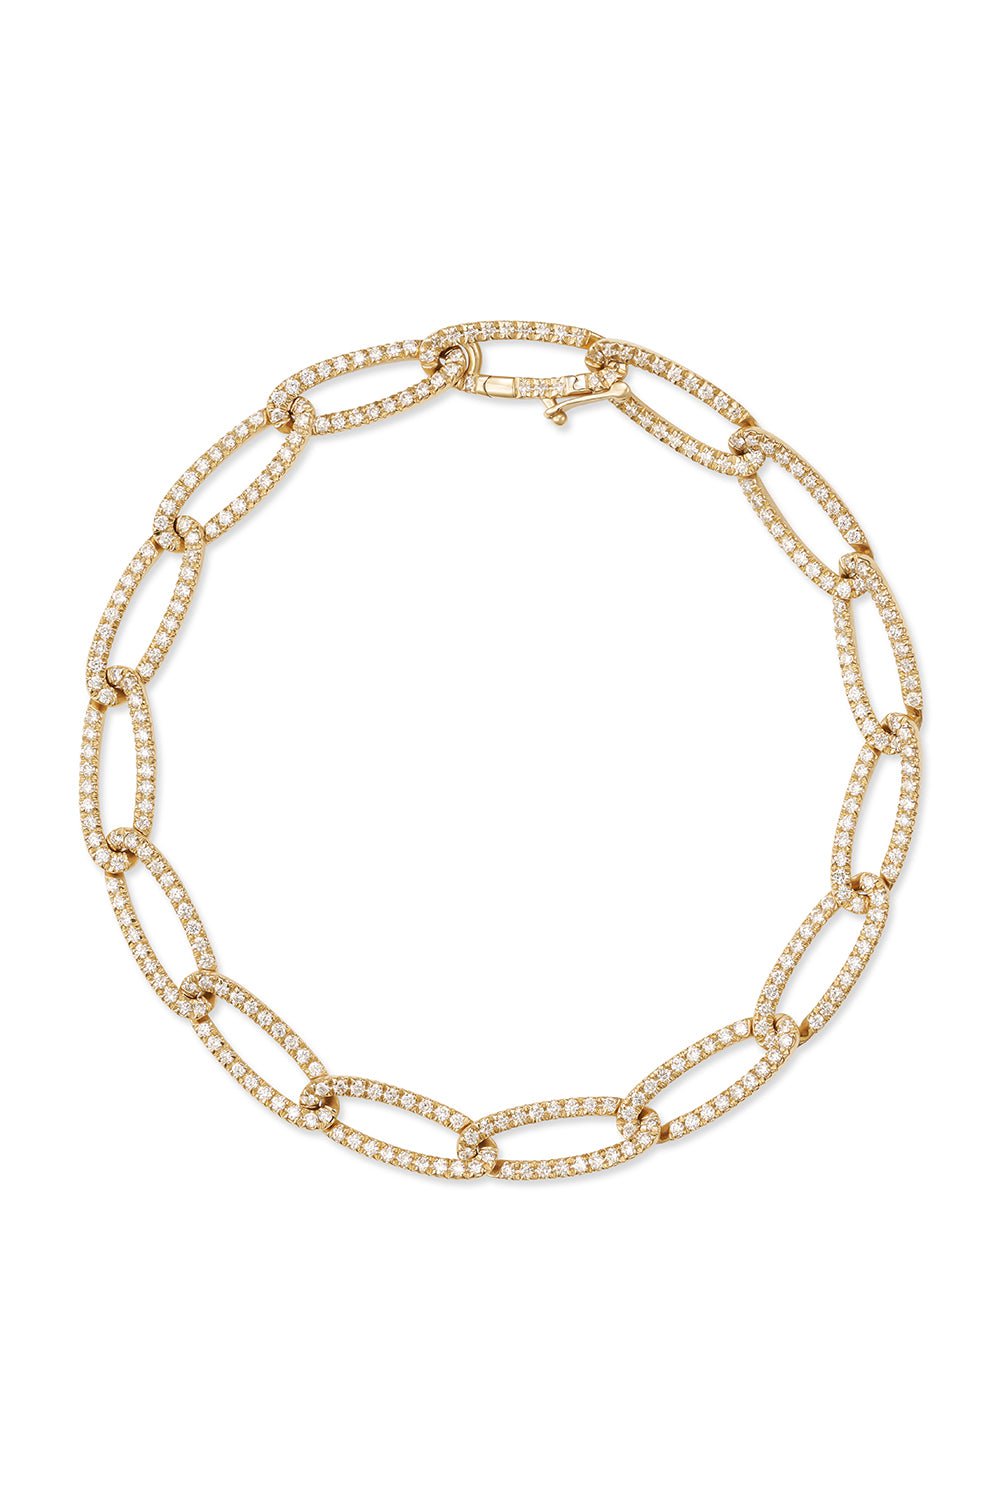 MELISSA KAYE-Small Lulu Diamond Bracelet-YELLOW GOLD